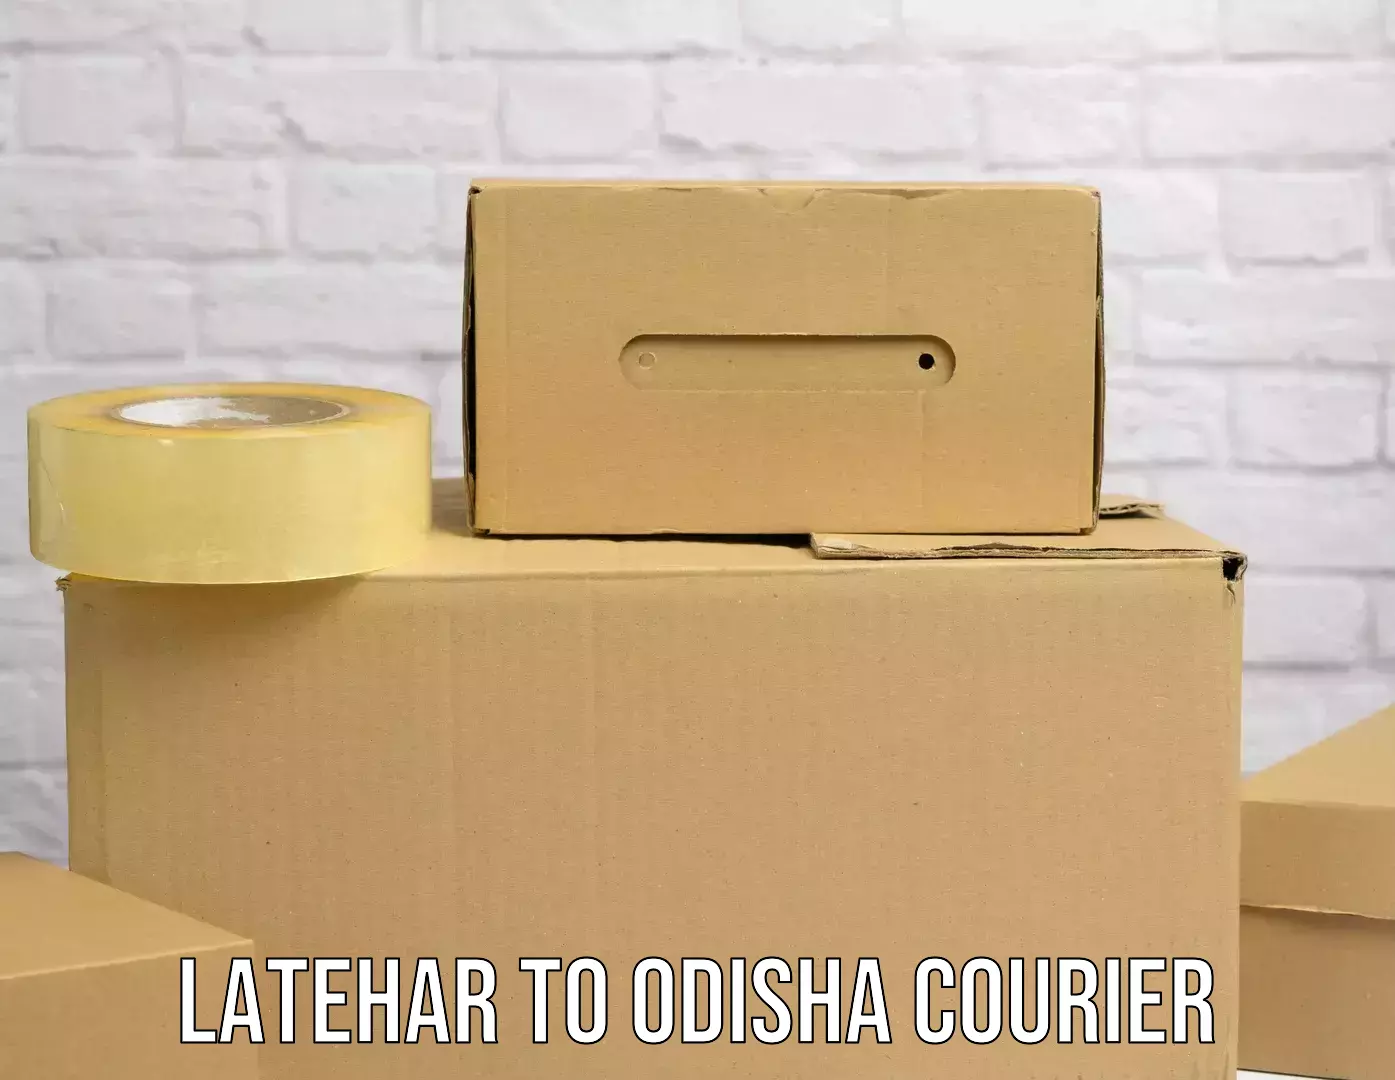 Easy access courier services Latehar to Tikiri